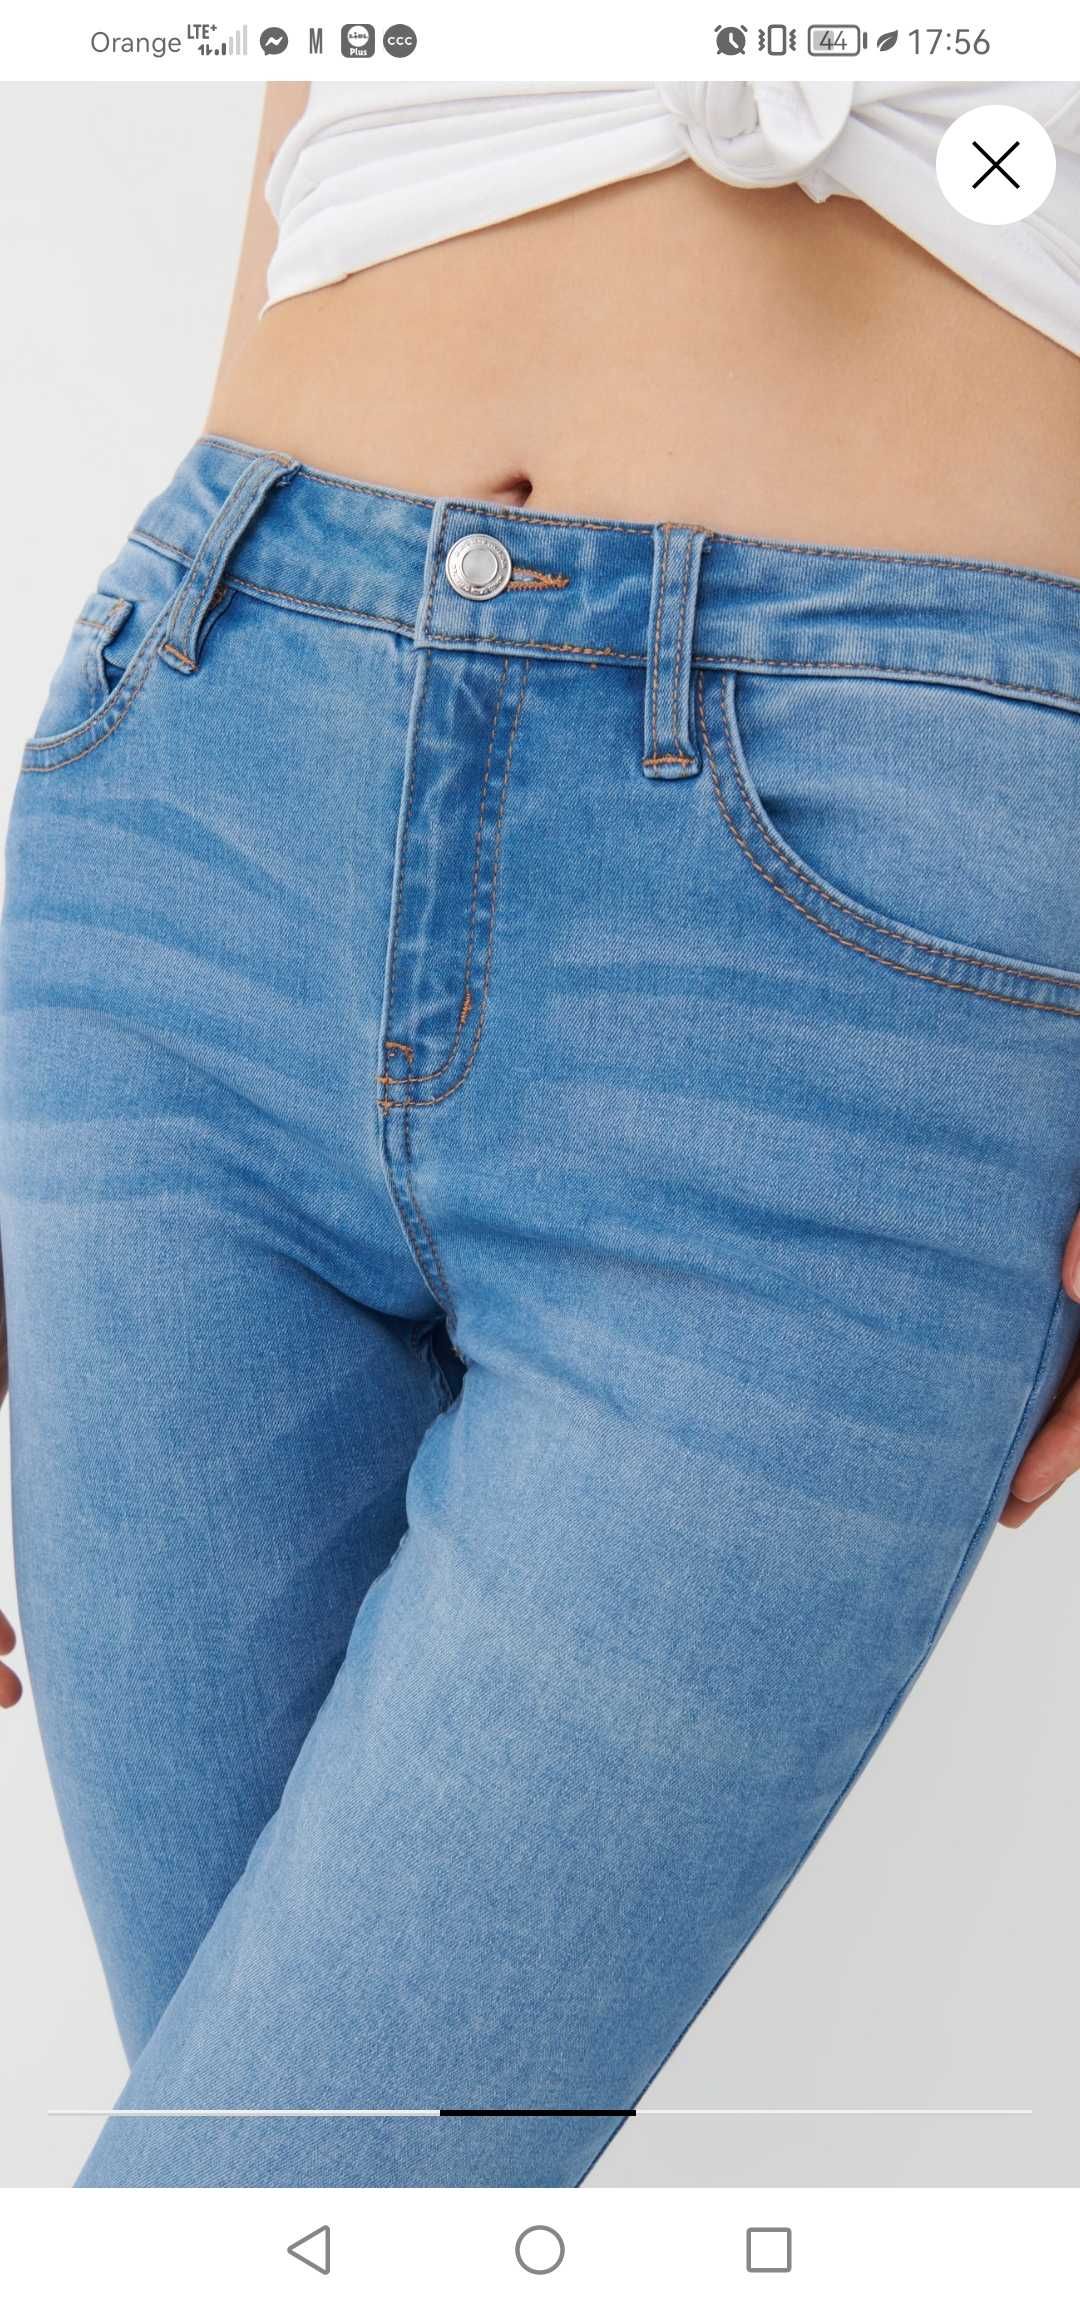 Spodnie jeansowe Mohito jeansy r.34 36 XS S jak nowe